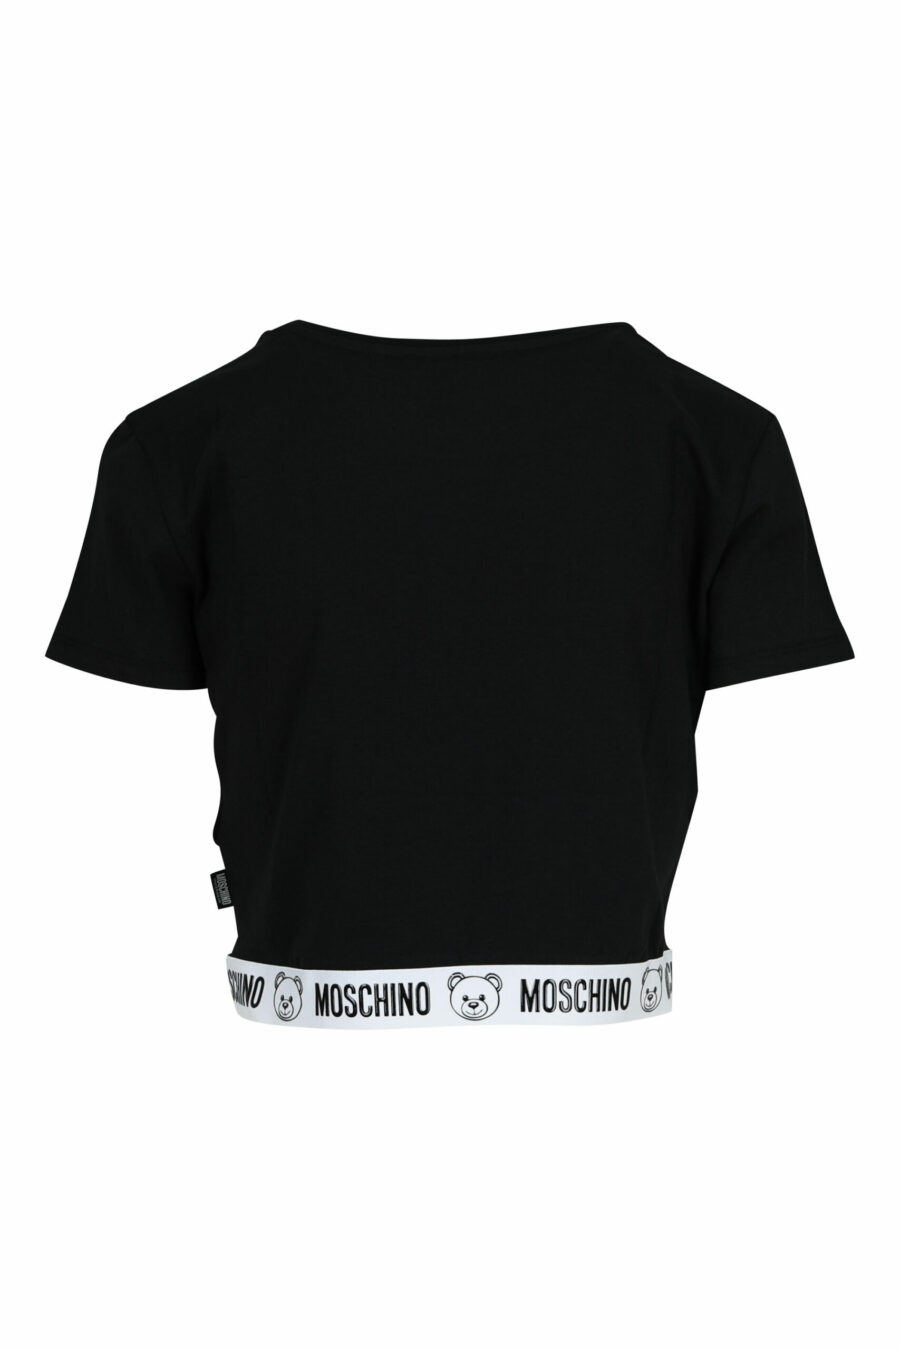 Short black T-shirt with bear logo on white ribbon - 667113355283 1 scaled